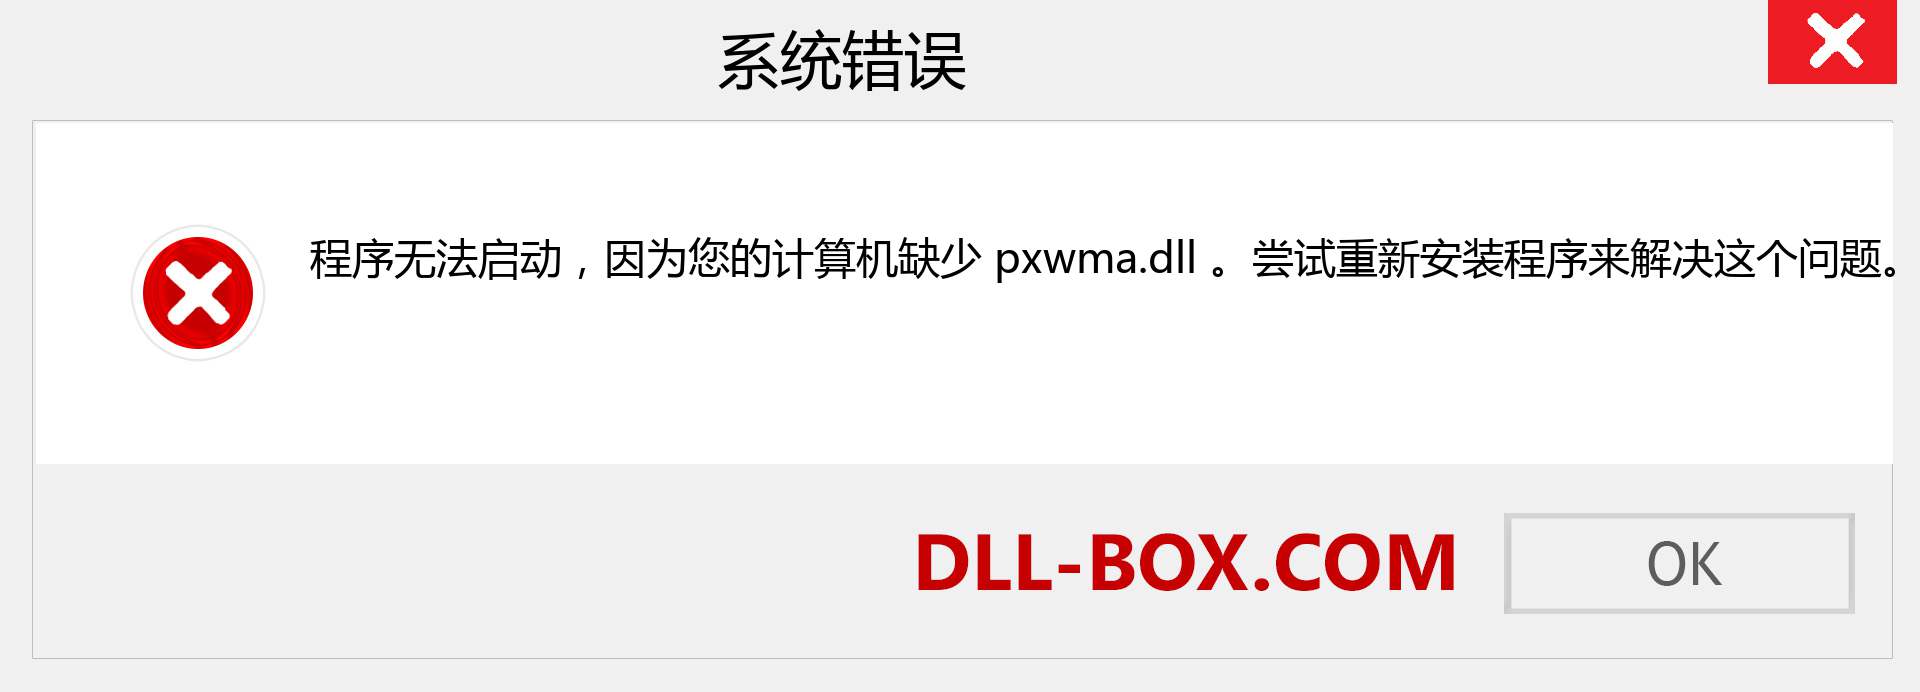 pxwma.dll 文件丢失？。 适用于 Windows 7、8、10 的下载 - 修复 Windows、照片、图像上的 pxwma dll 丢失错误